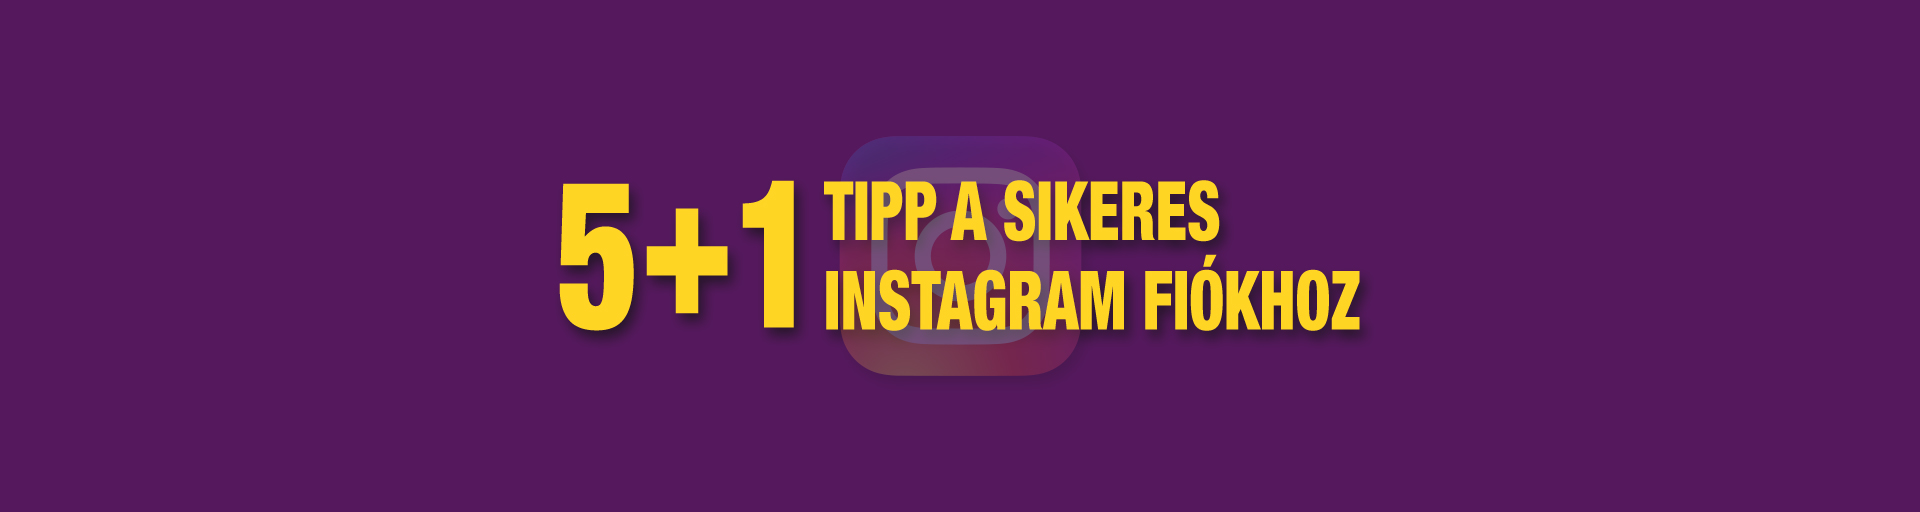 5+1 tipp a sikeres Instagram fiókhoz